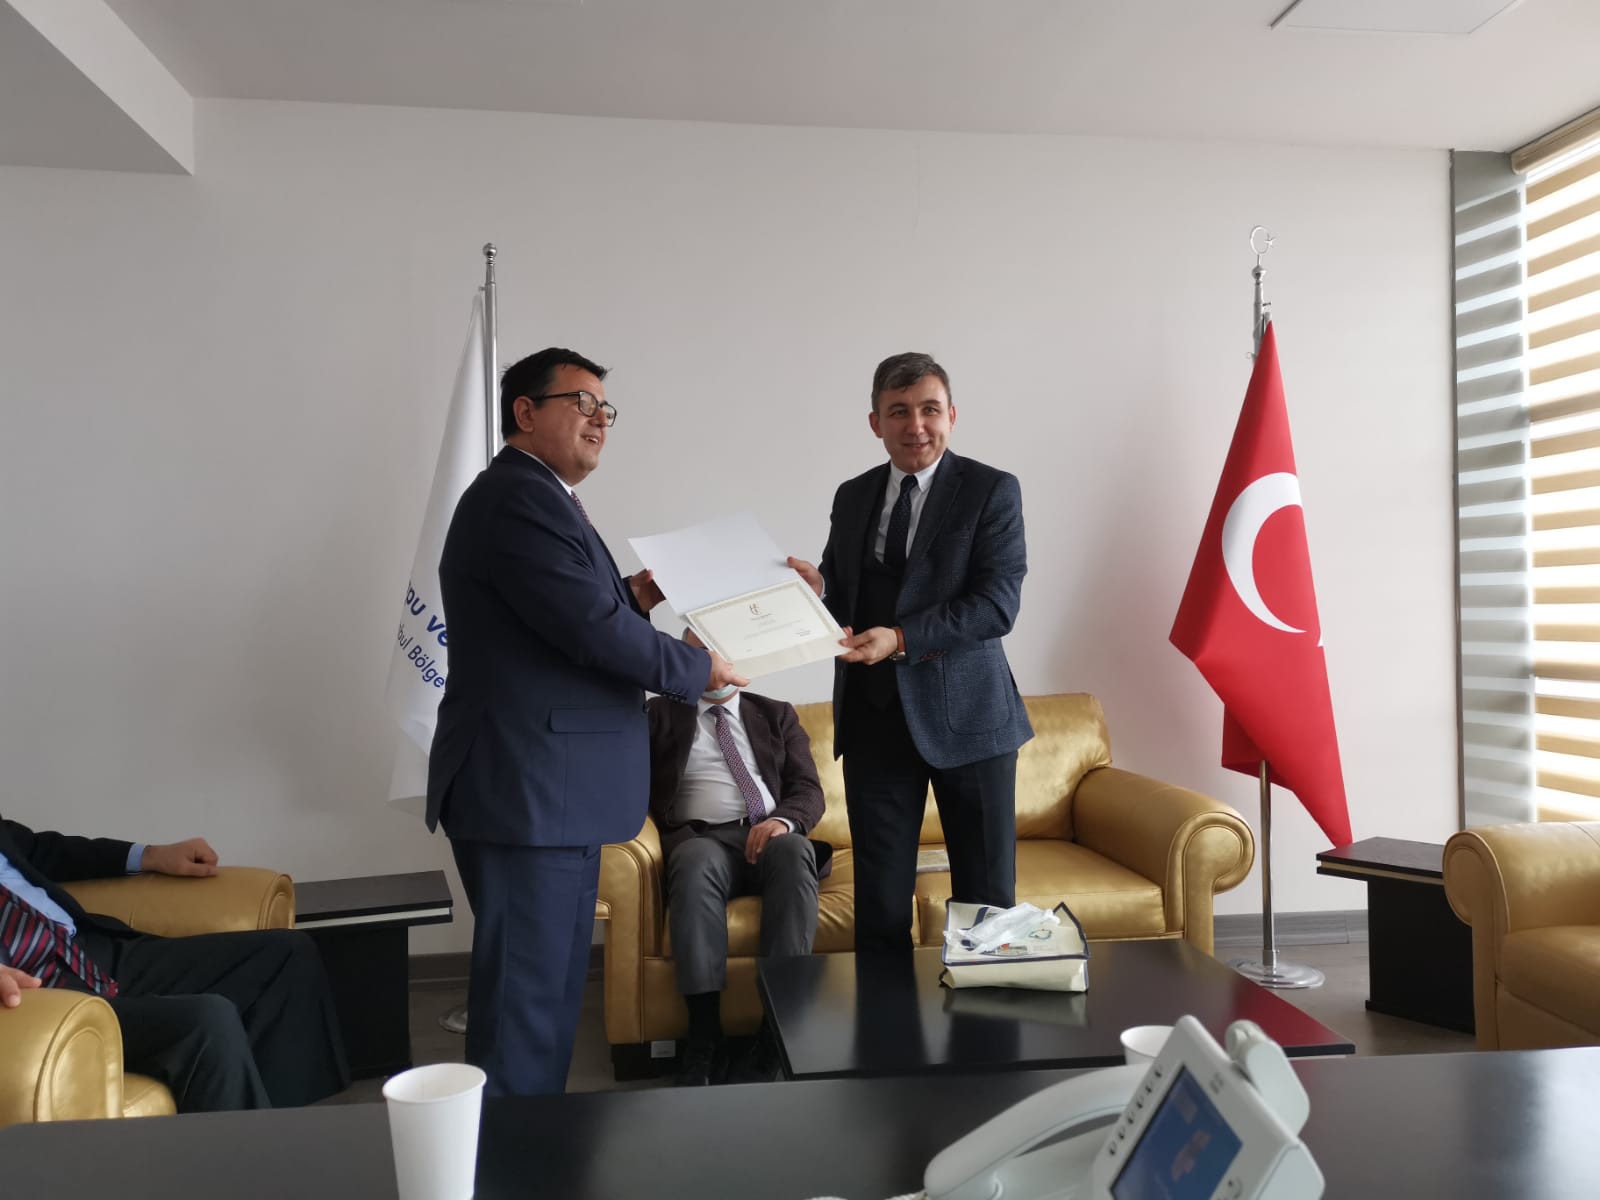  Şube Müdürü İbrahim ERSOY'a Genel Müdürümüz M. Zeki ADLI adına teşekkür belgesi takdim edilmiştir.